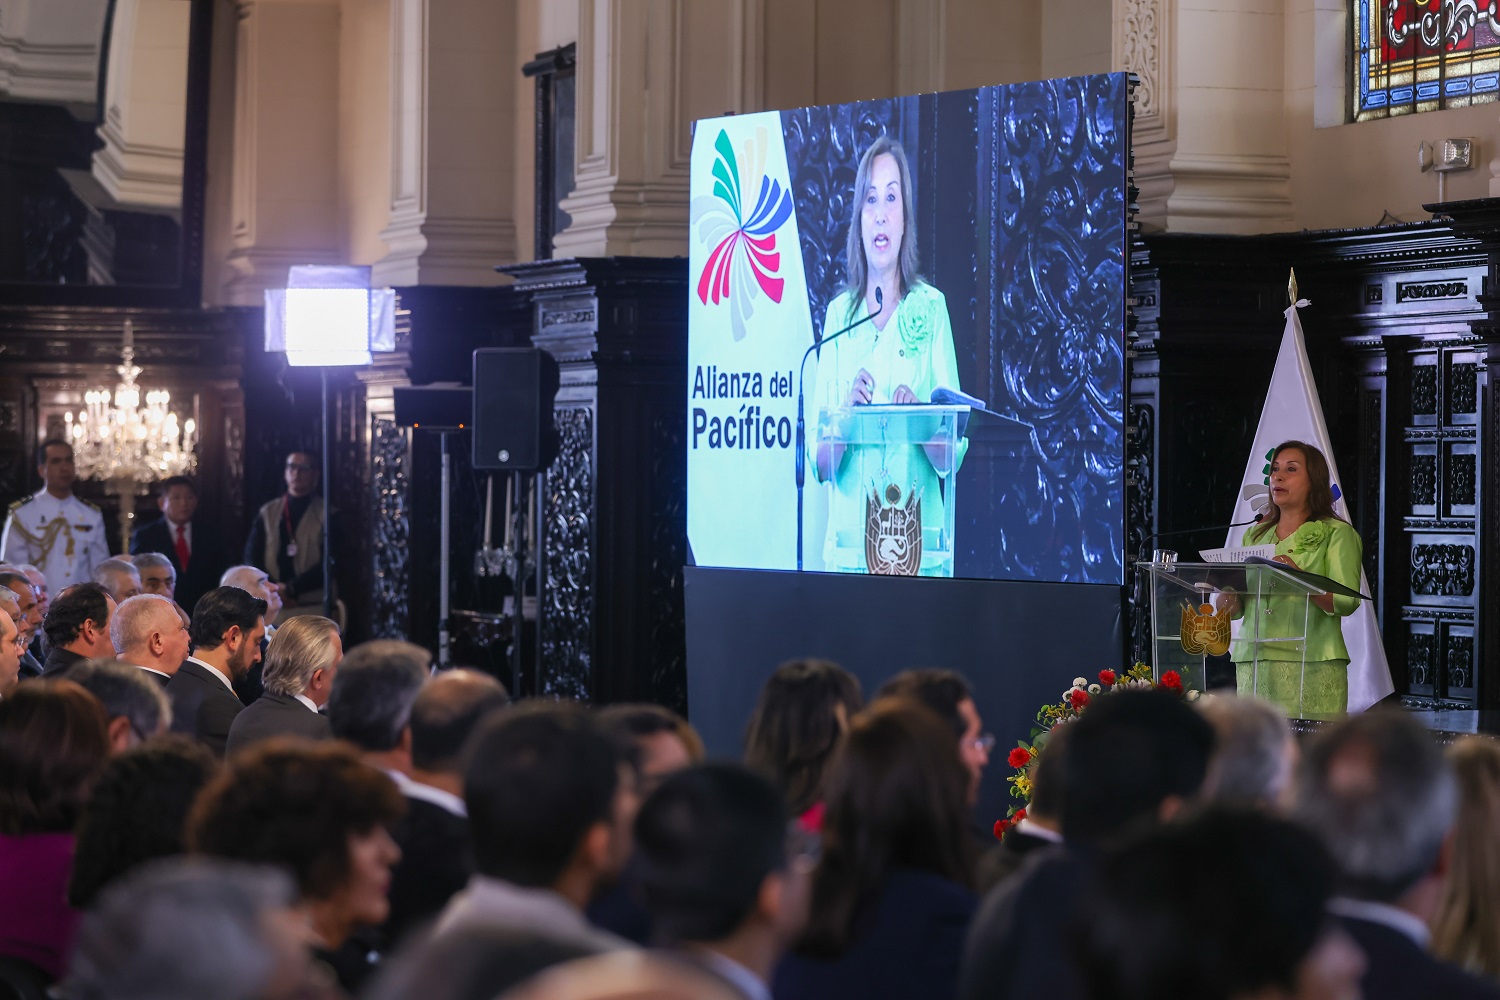 Internacionalización de las micro, pequeñas y medianas empresas será el sello del Perú al asumir presidencia pro tempore de la Alianza del Pacífico.